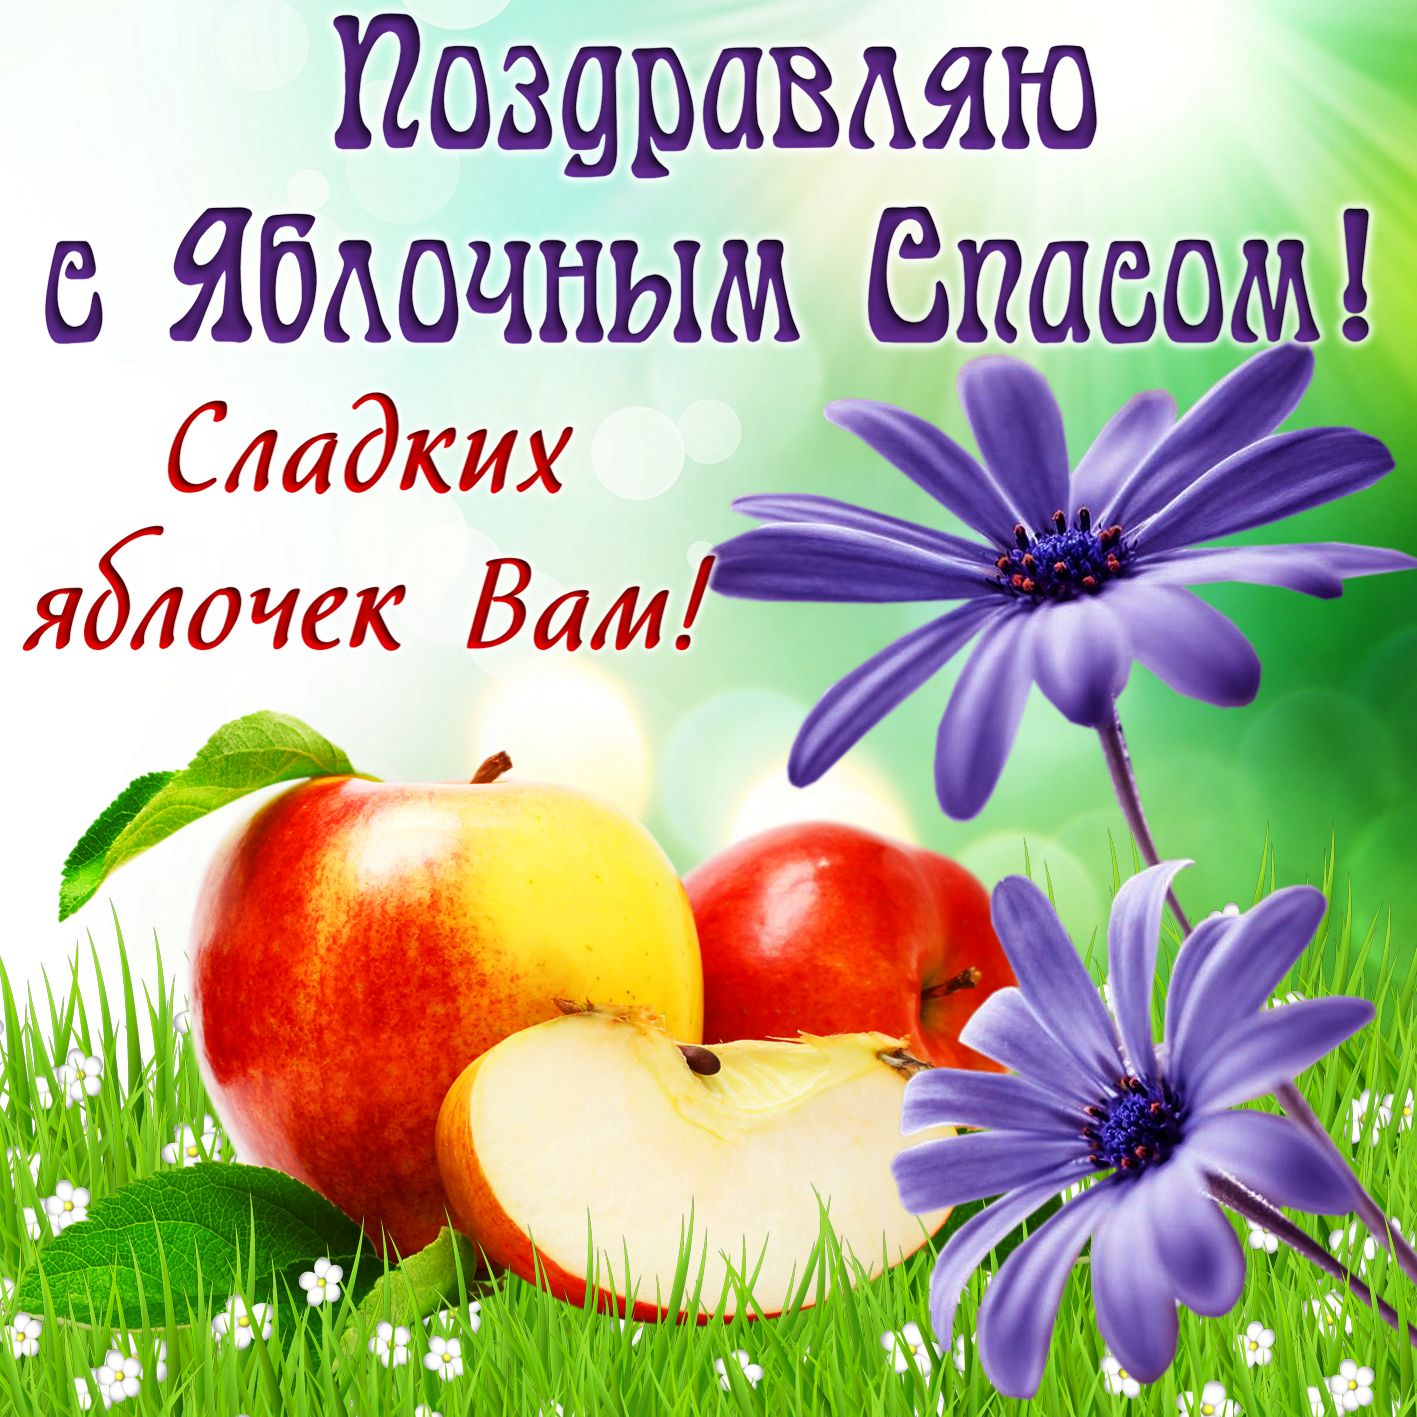 большая открытка с пожеланиями яблочным спасом вас: Поздравляю с Яблочным Спасом! Сладких яблочек Вам!